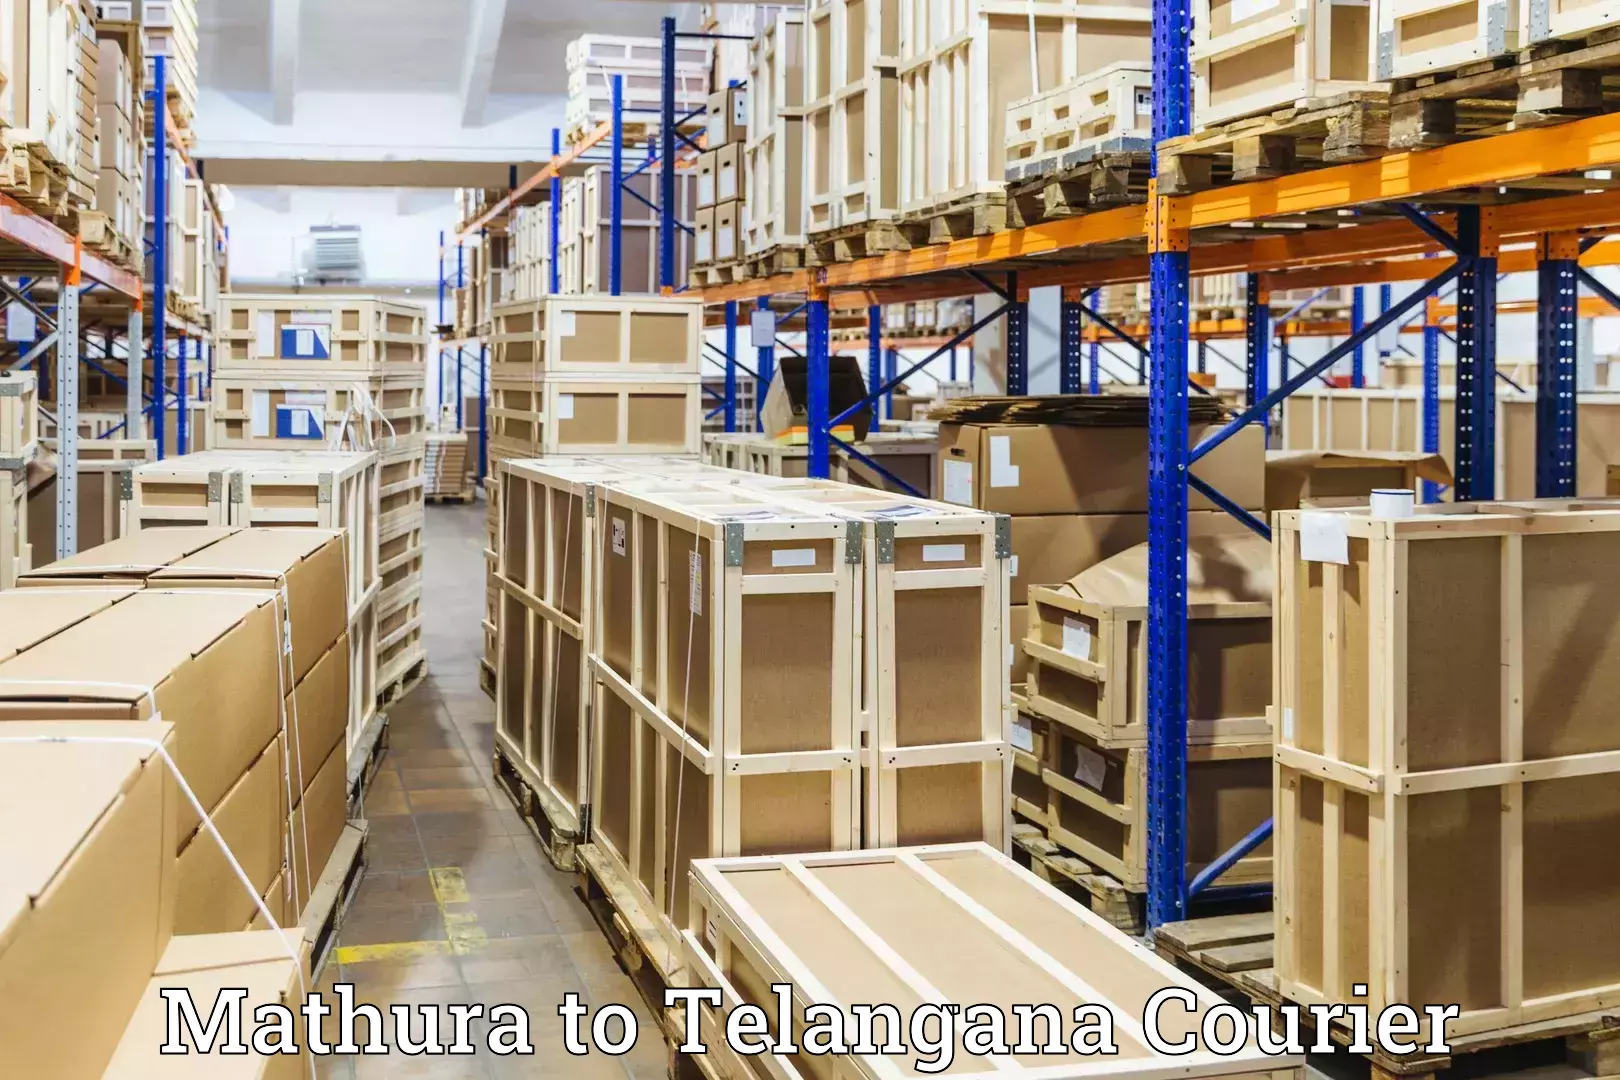 Luggage delivery system Mathura to Mudigonda